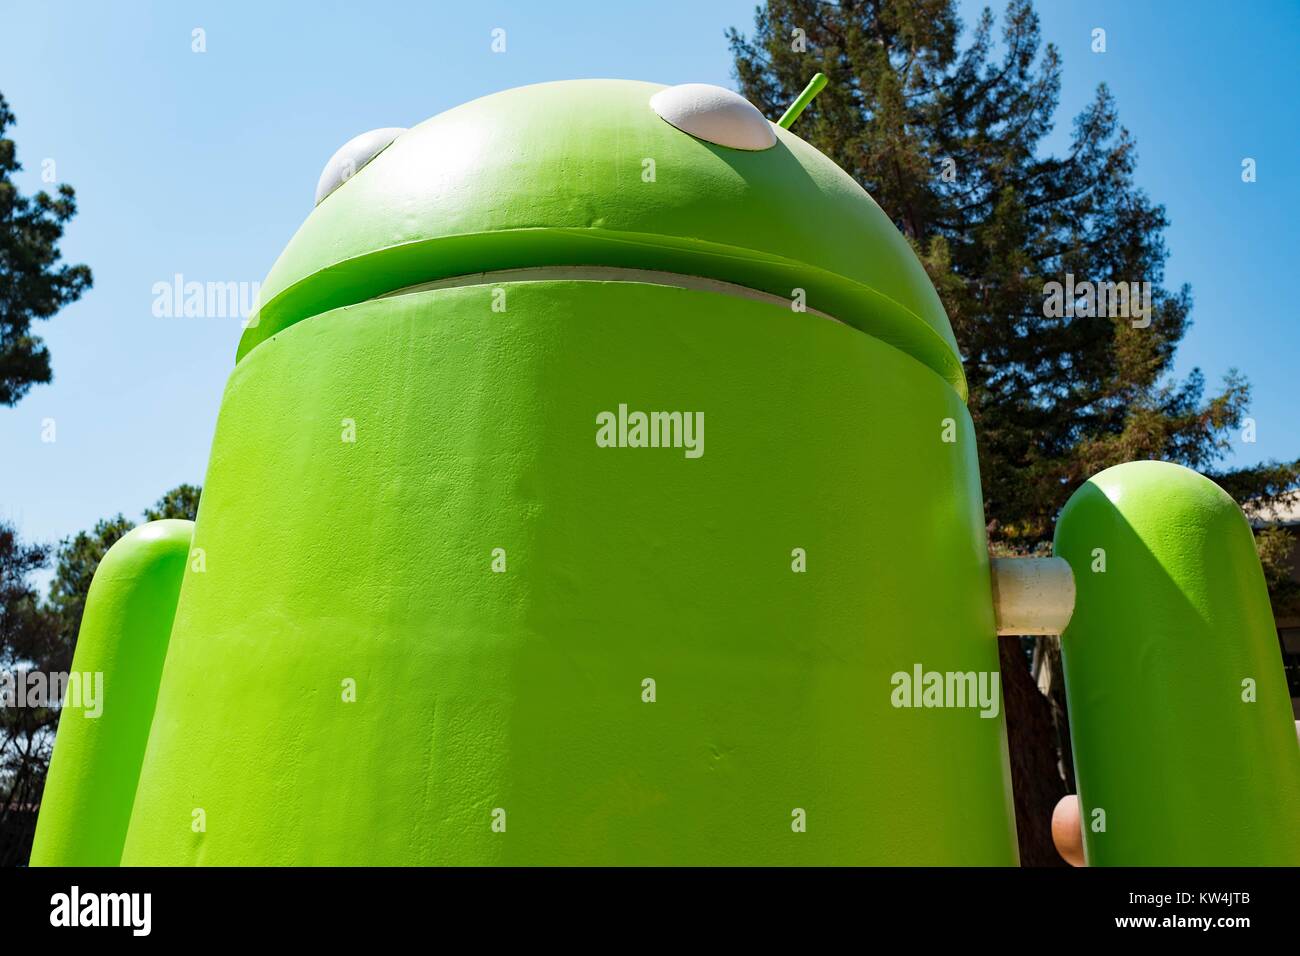 Vista in dettaglio di una grande scultura che rappresenta il cellulare Android Sistema operativo, al Googleplex, sede del motore di ricerca Google società nella Silicon Valley Town di Mountain View, California, 24 agosto 2016. Foto Stock